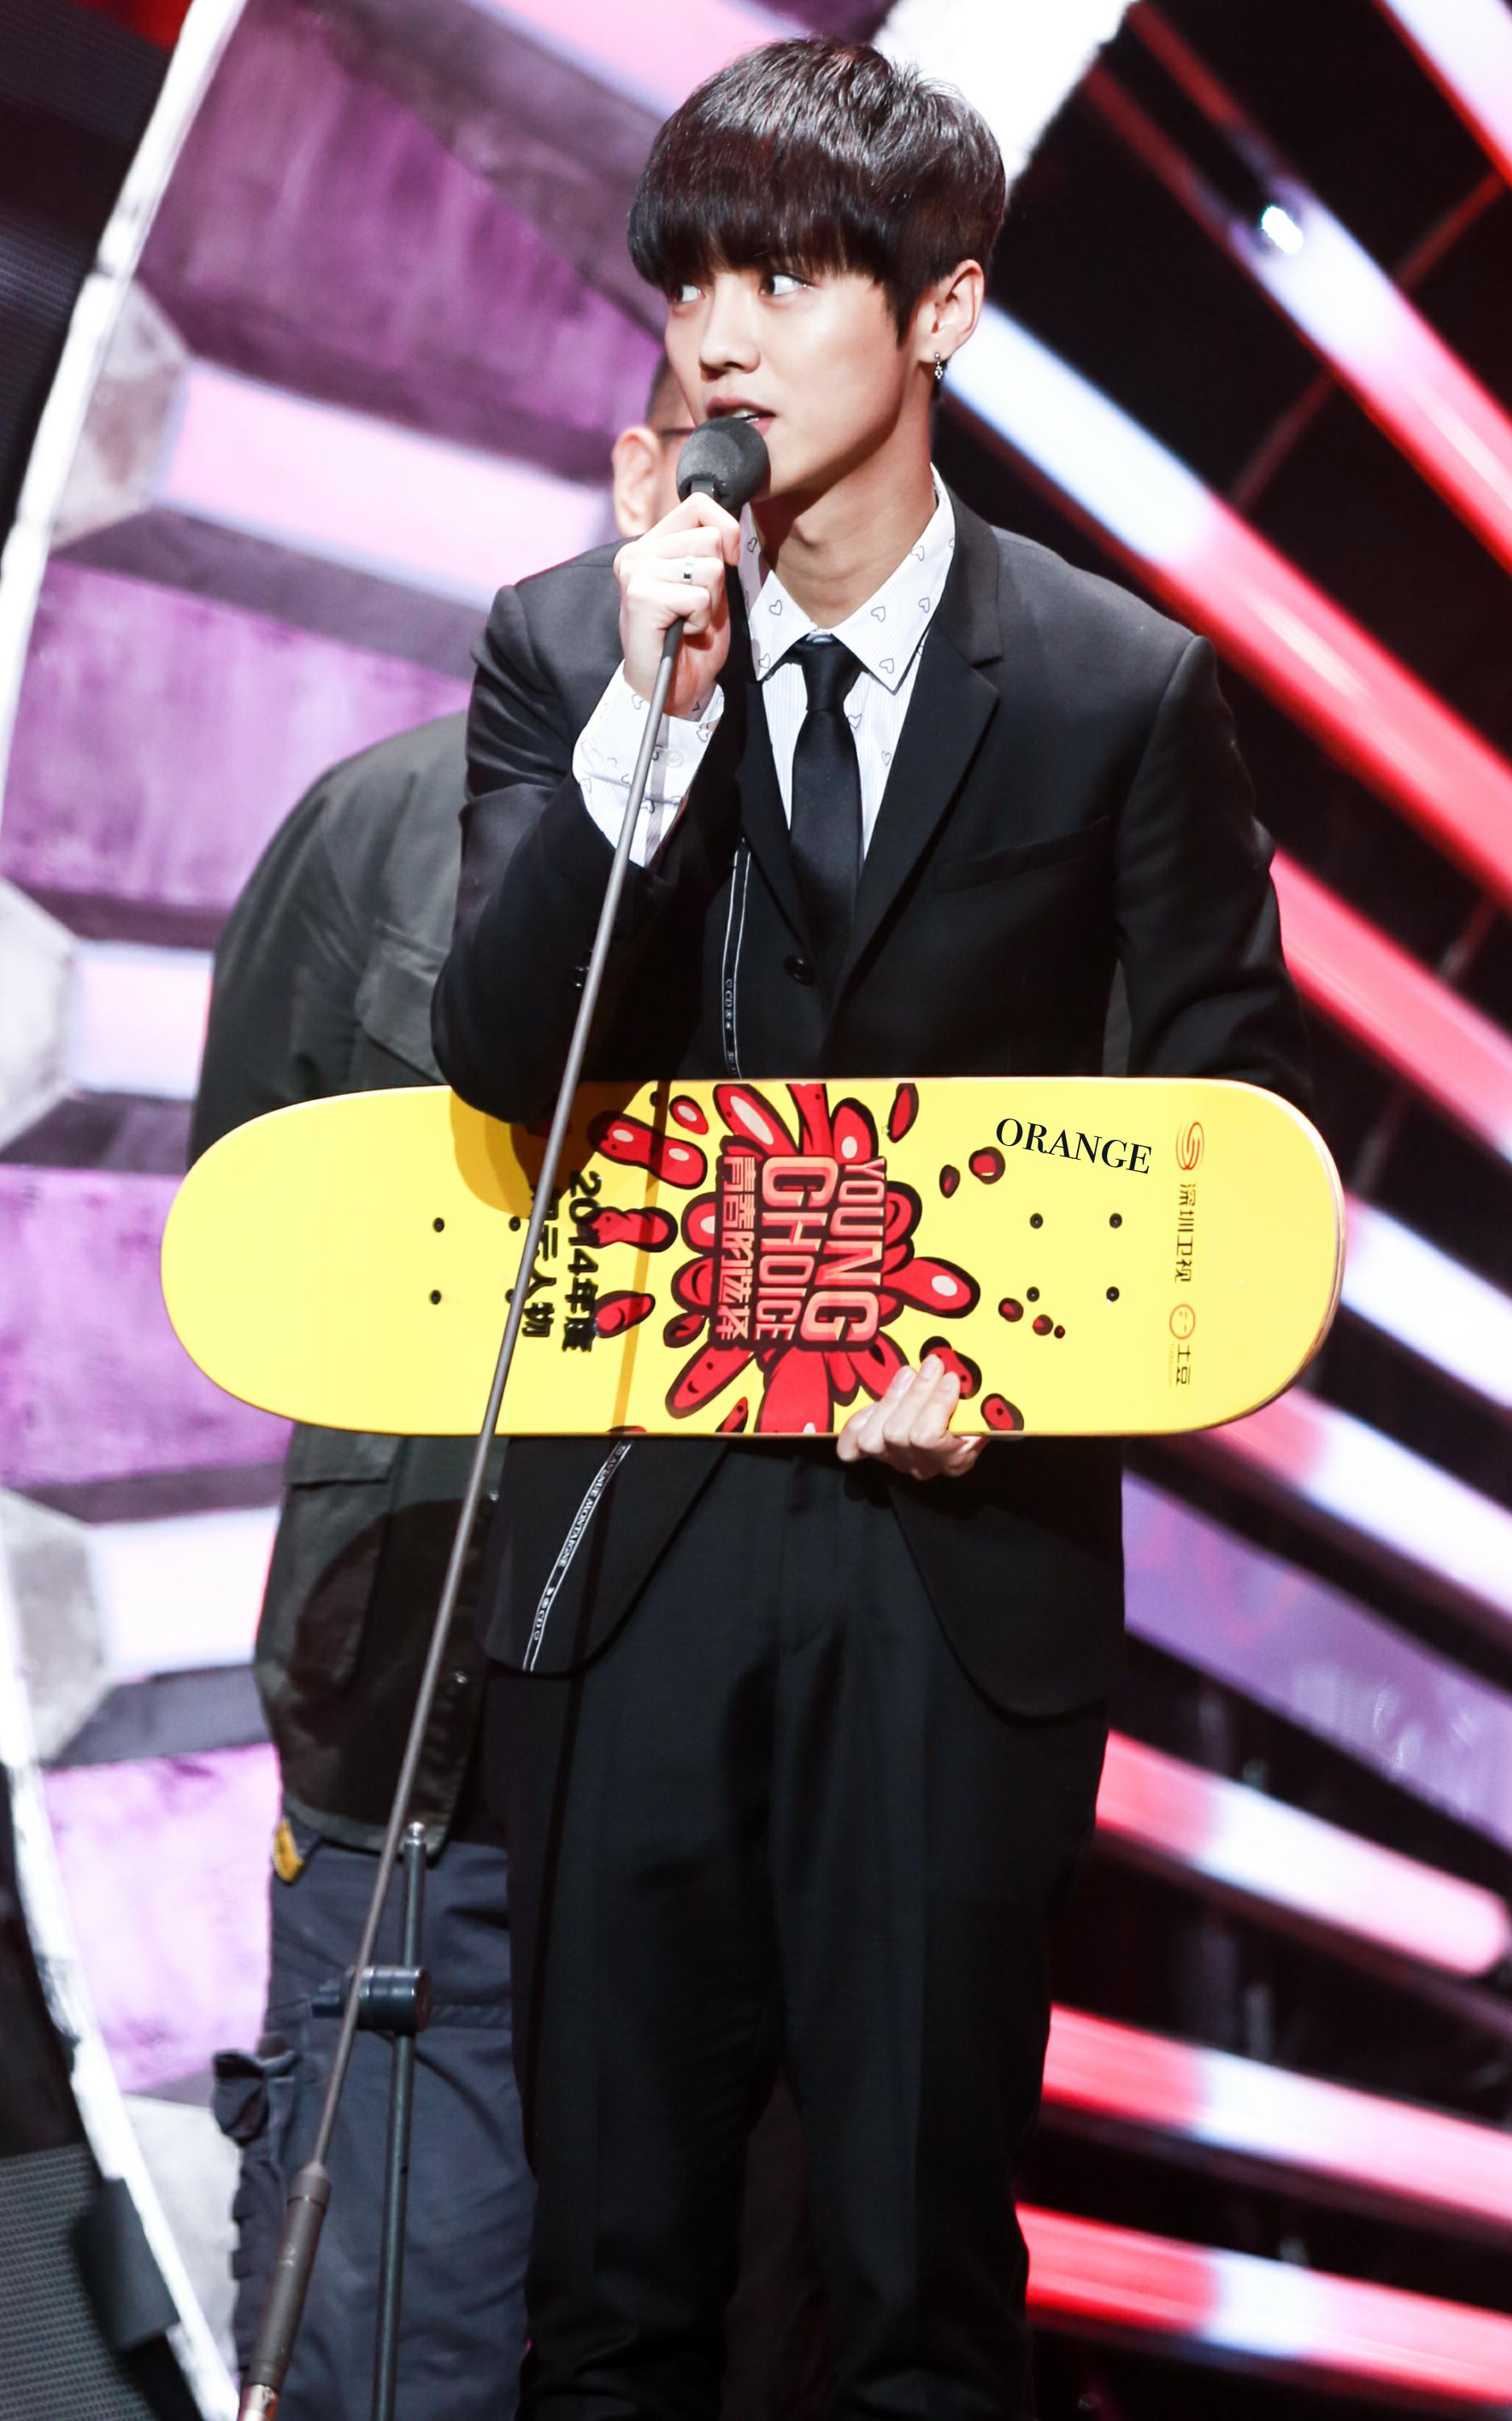 [FANTAKEN] 141210 2014 Tudou Young Choice Awards [120P] 7e1e49f1jw1endl5fs0z7j21g22bcgwc